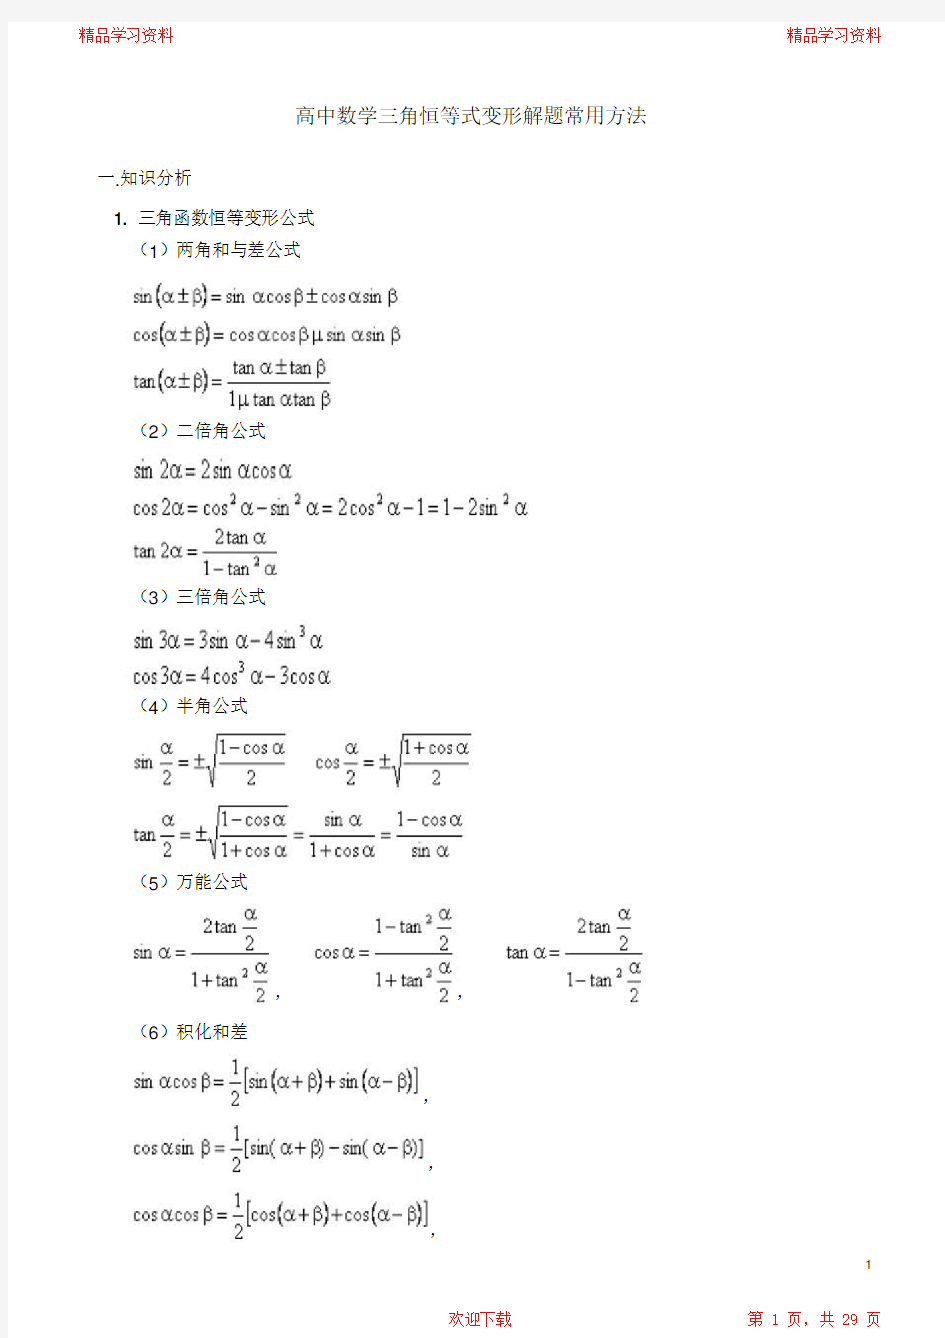 最全面高中数学三角恒等式变形解题常用方法2021(完整版)